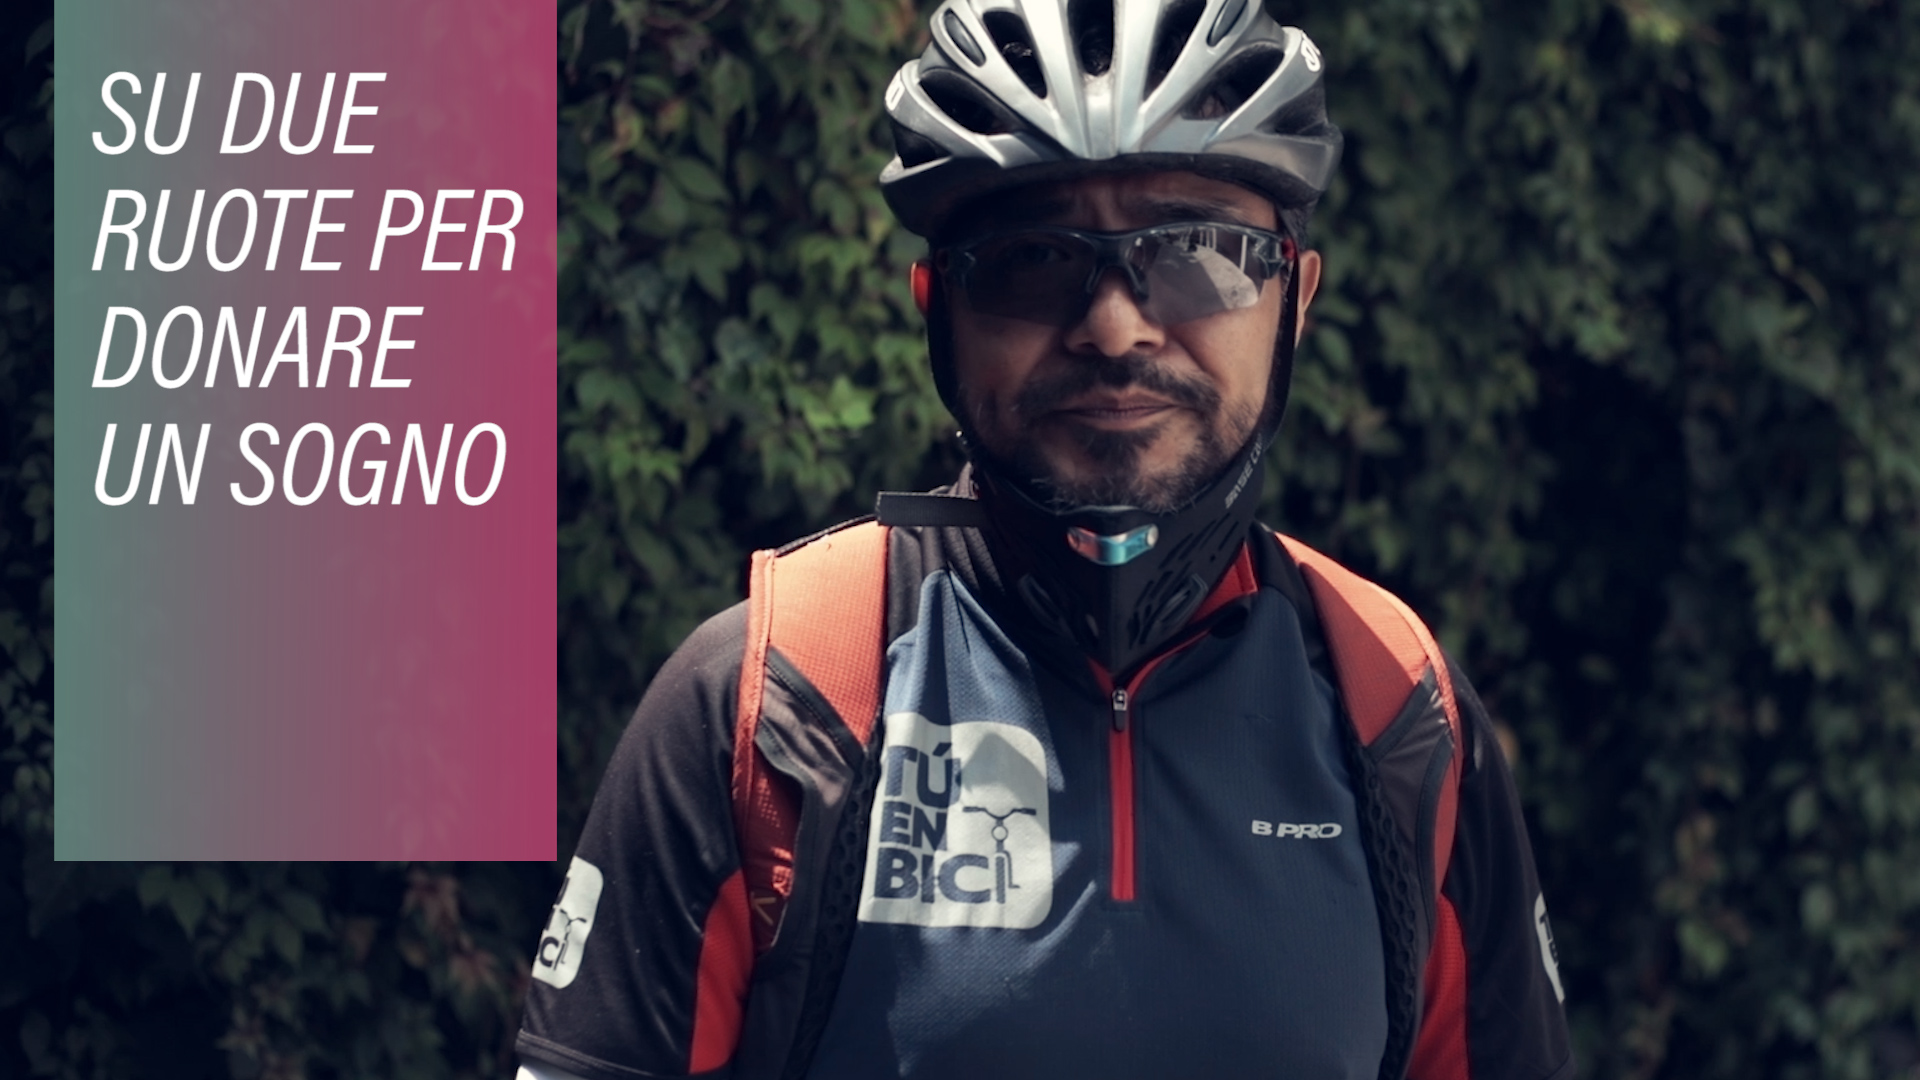 In corsa per la solidarieta': in bici per 40km al giorno